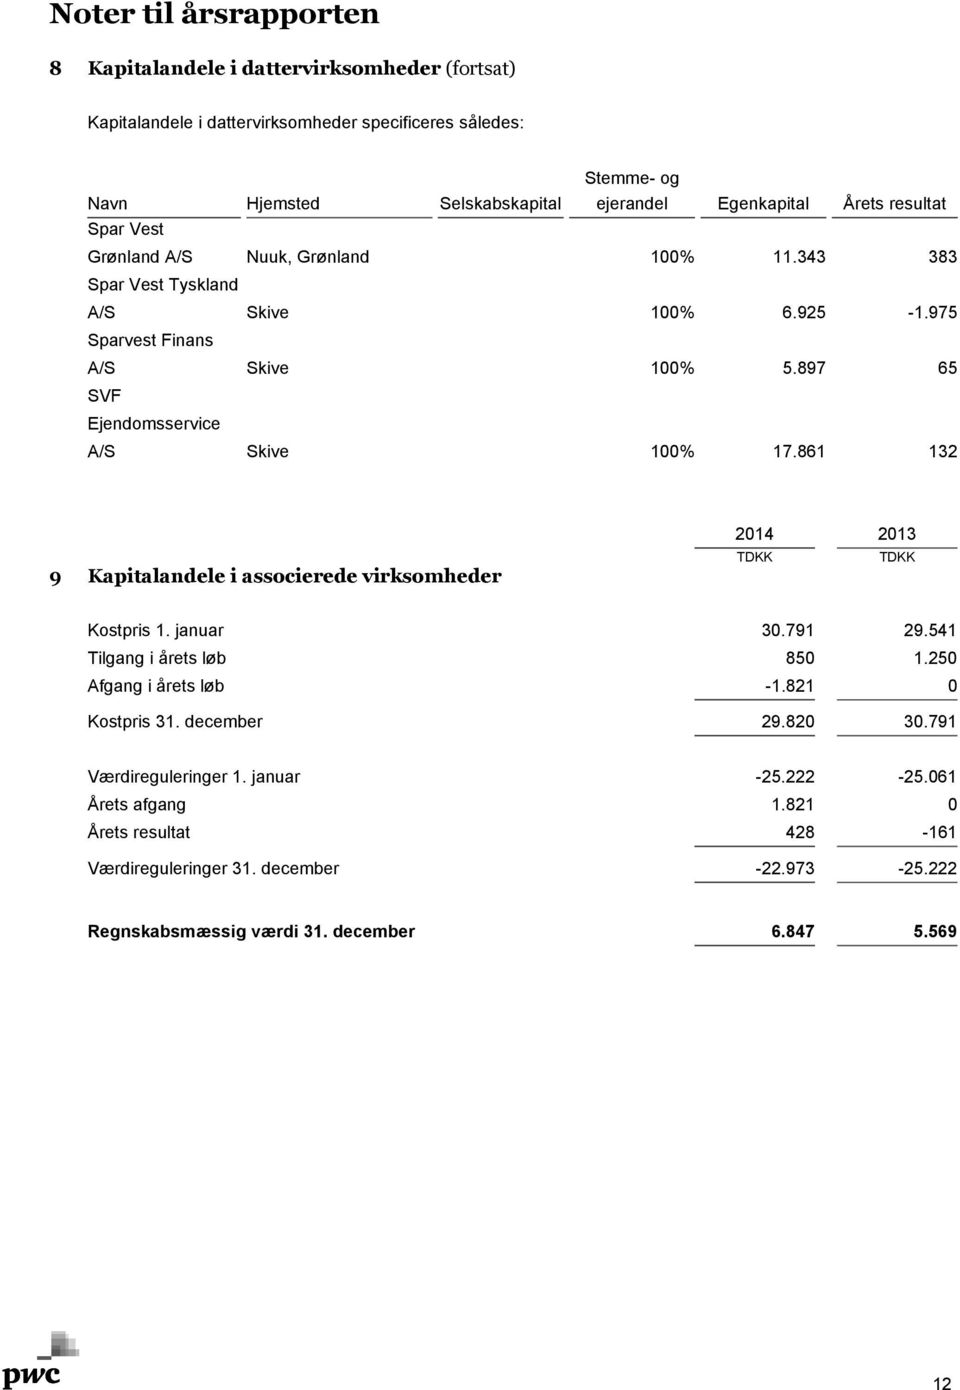 897 65 SVF Ejendomsservice A/S Skive 100% 17.861 132 9 Kapitalandele i associerede virksomheder 2014 2013 Kostpris 1. januar 30.791 29.541 Tilgang i årets løb 850 1.